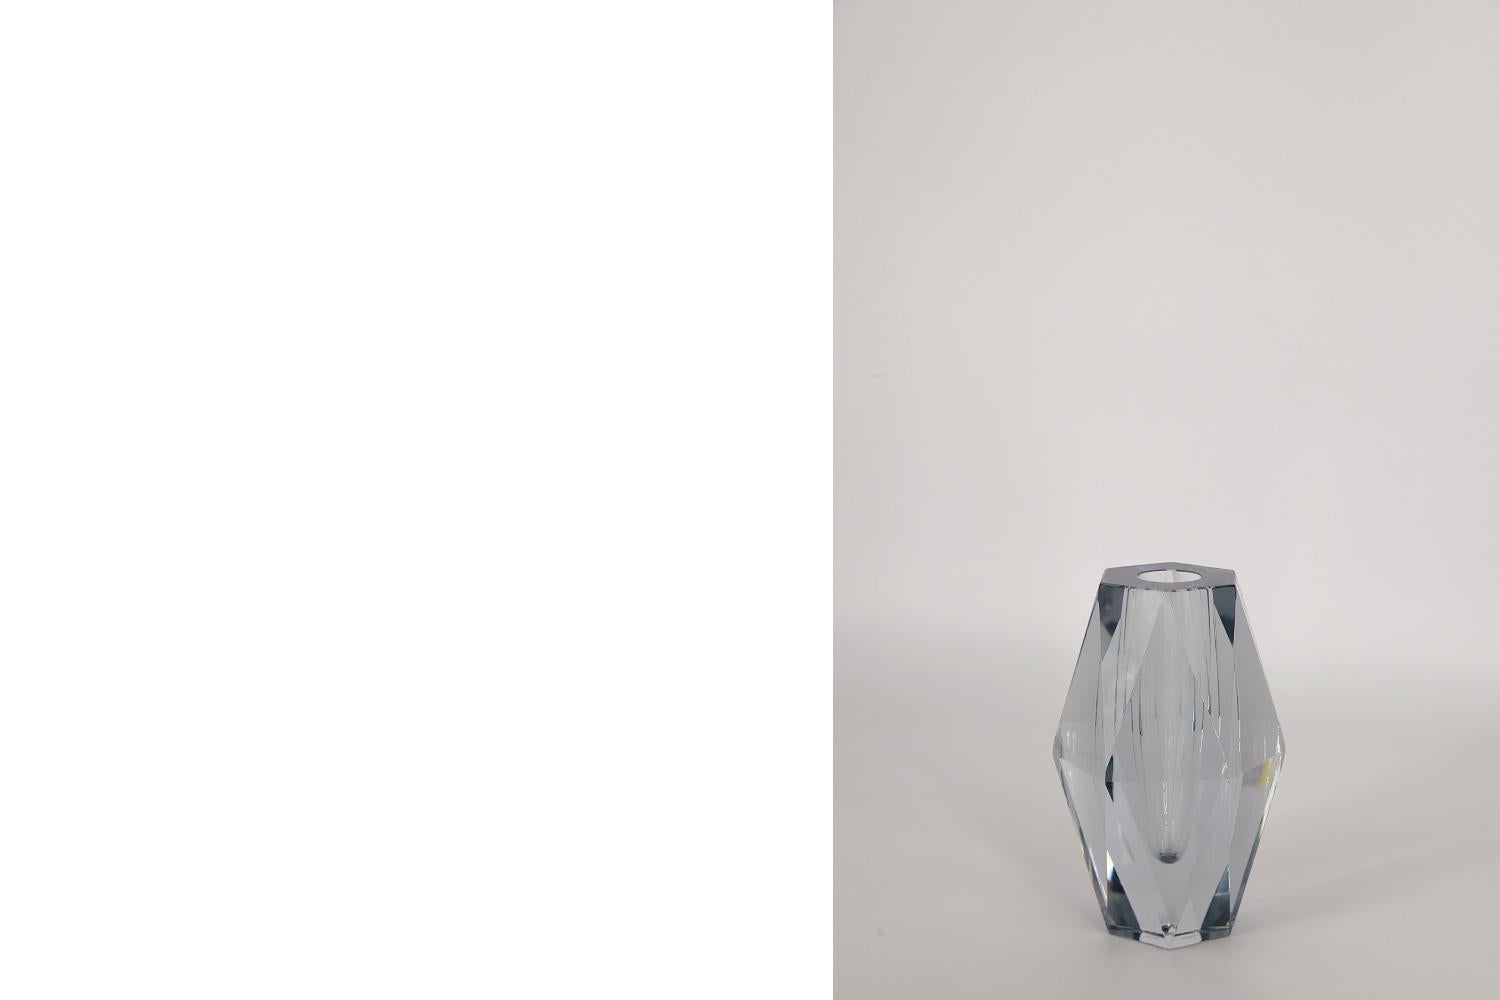 Ce vase en verre Diamond a été conçu par Asta Strömberg pour la verrerie suédoise Strömbergshyttan dans les années 1960. Le vase est fabriqué en verre épais de haute qualité de couleur bleu glacier. Il crée des effets visuels très intéressants en